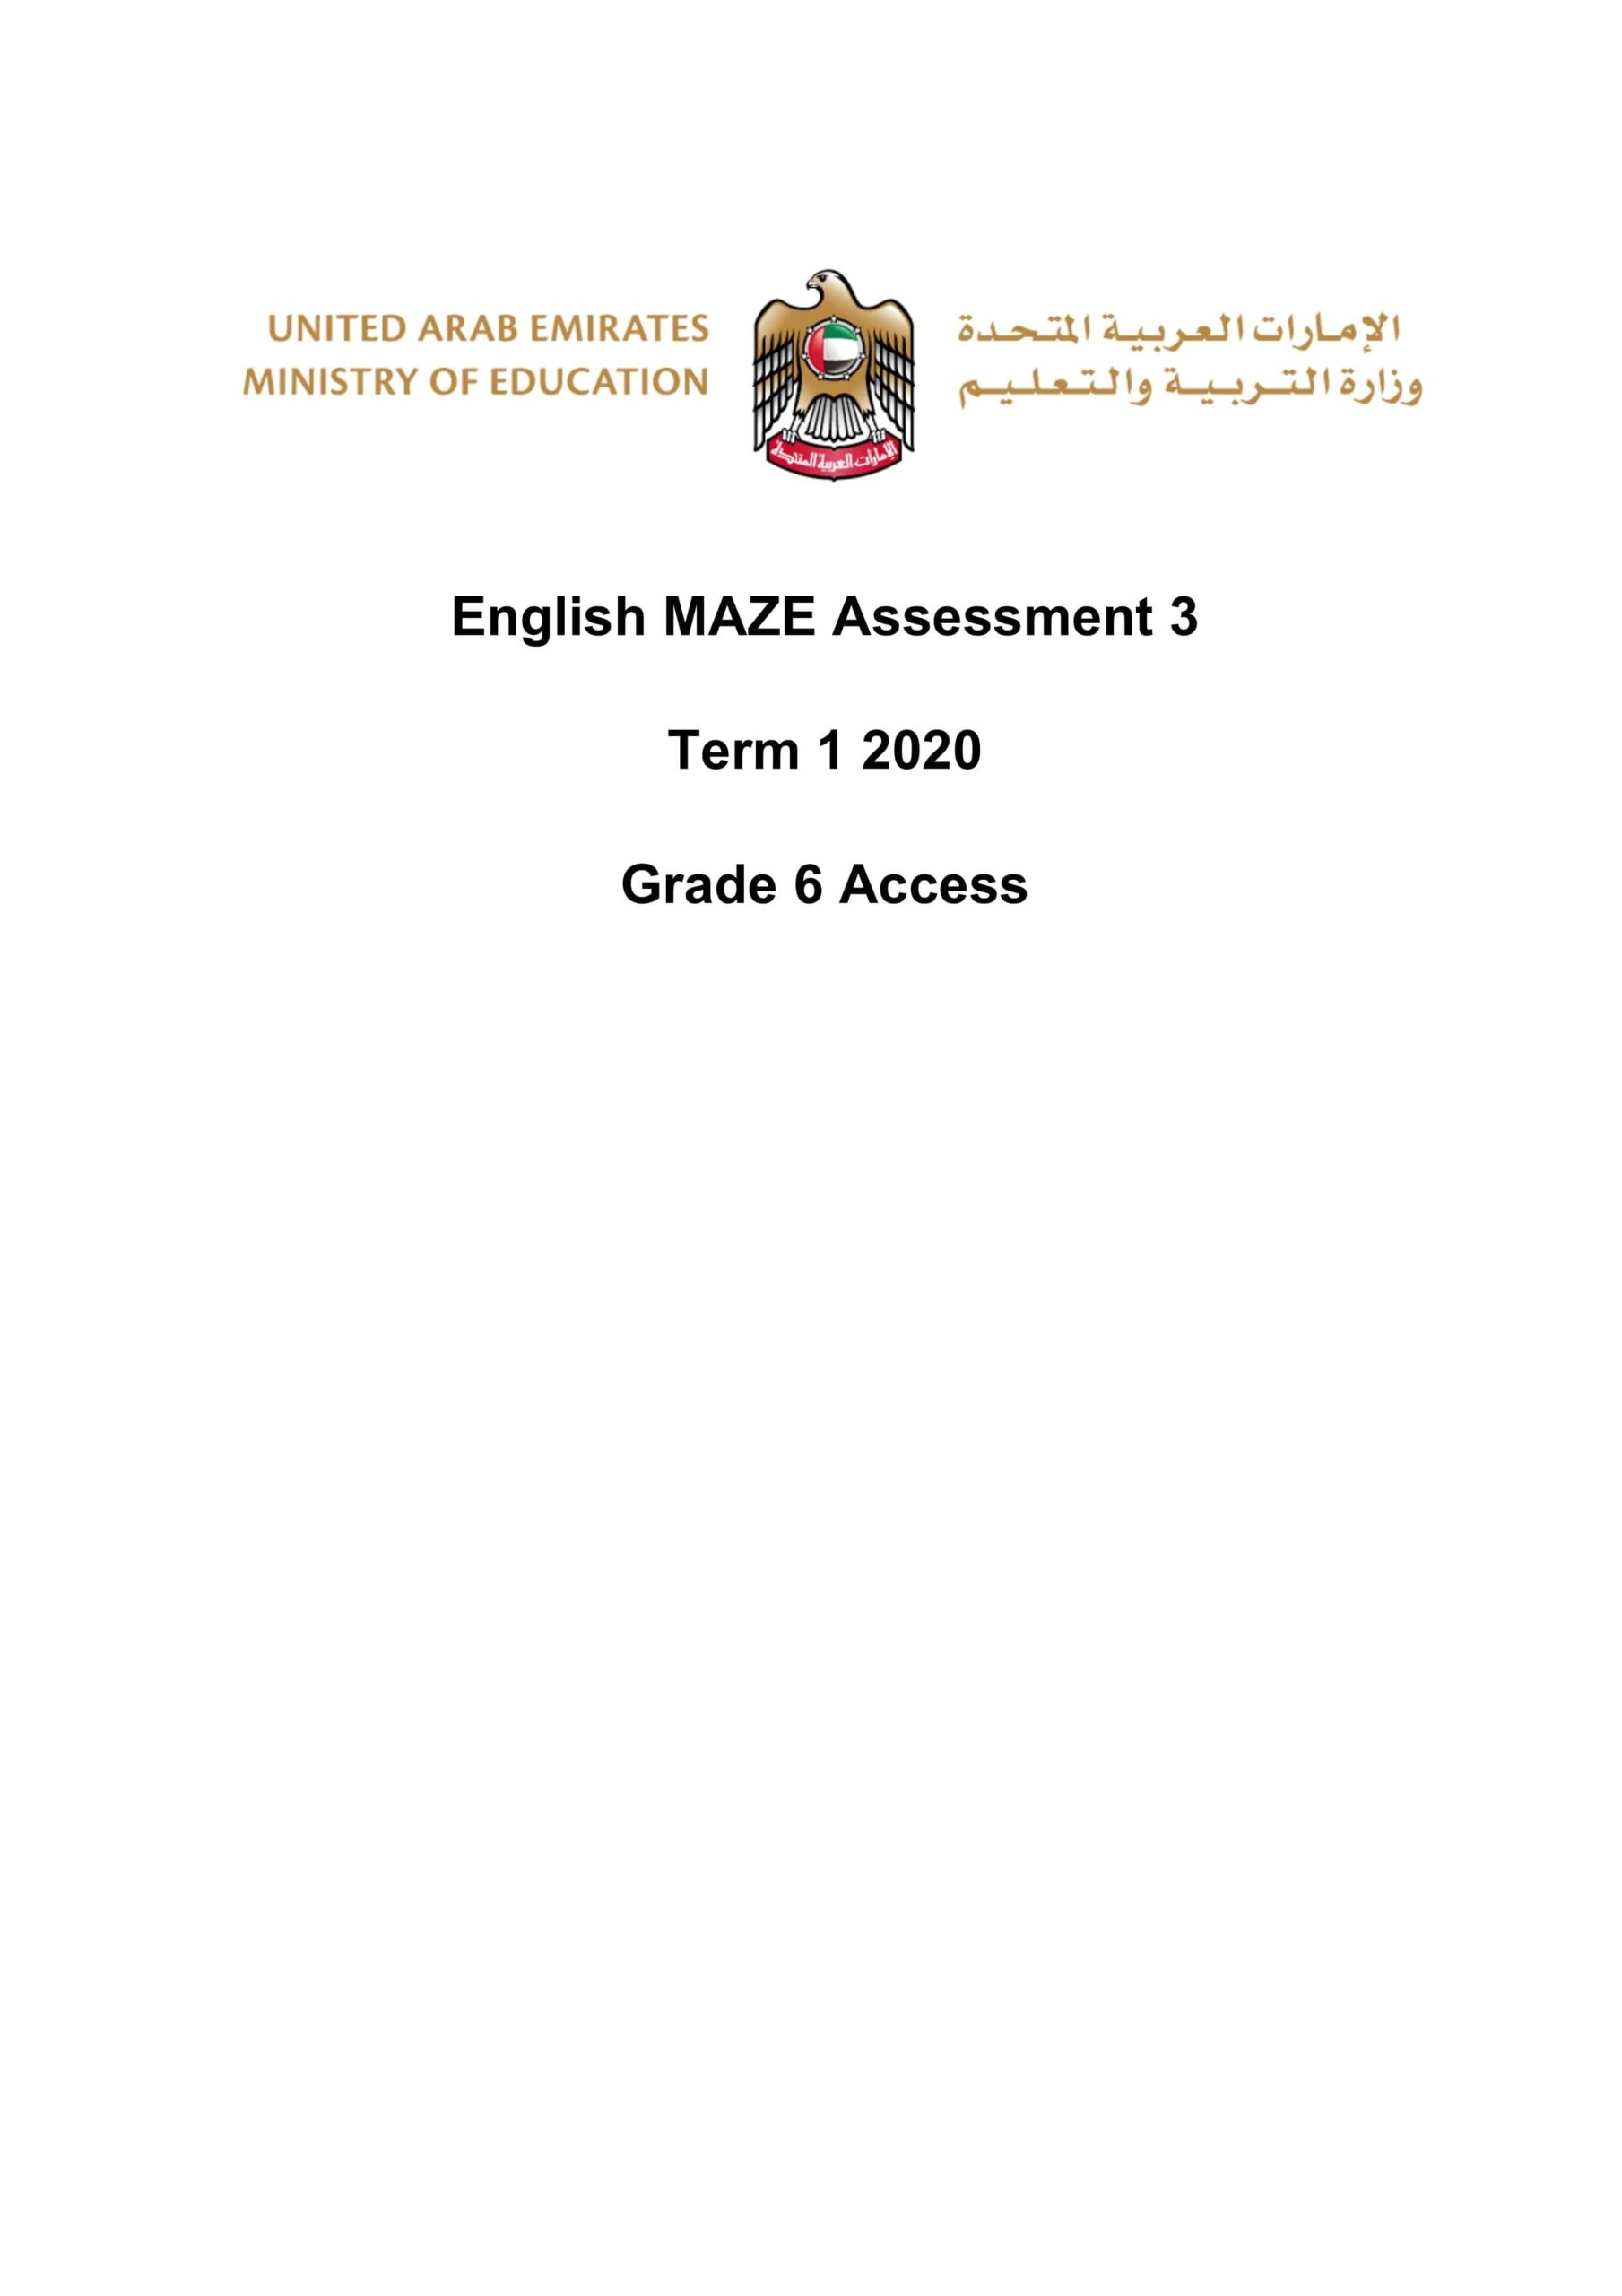 أوراق عمل MAZE Assessment اللغة الإنجليزية الصف السادس Access